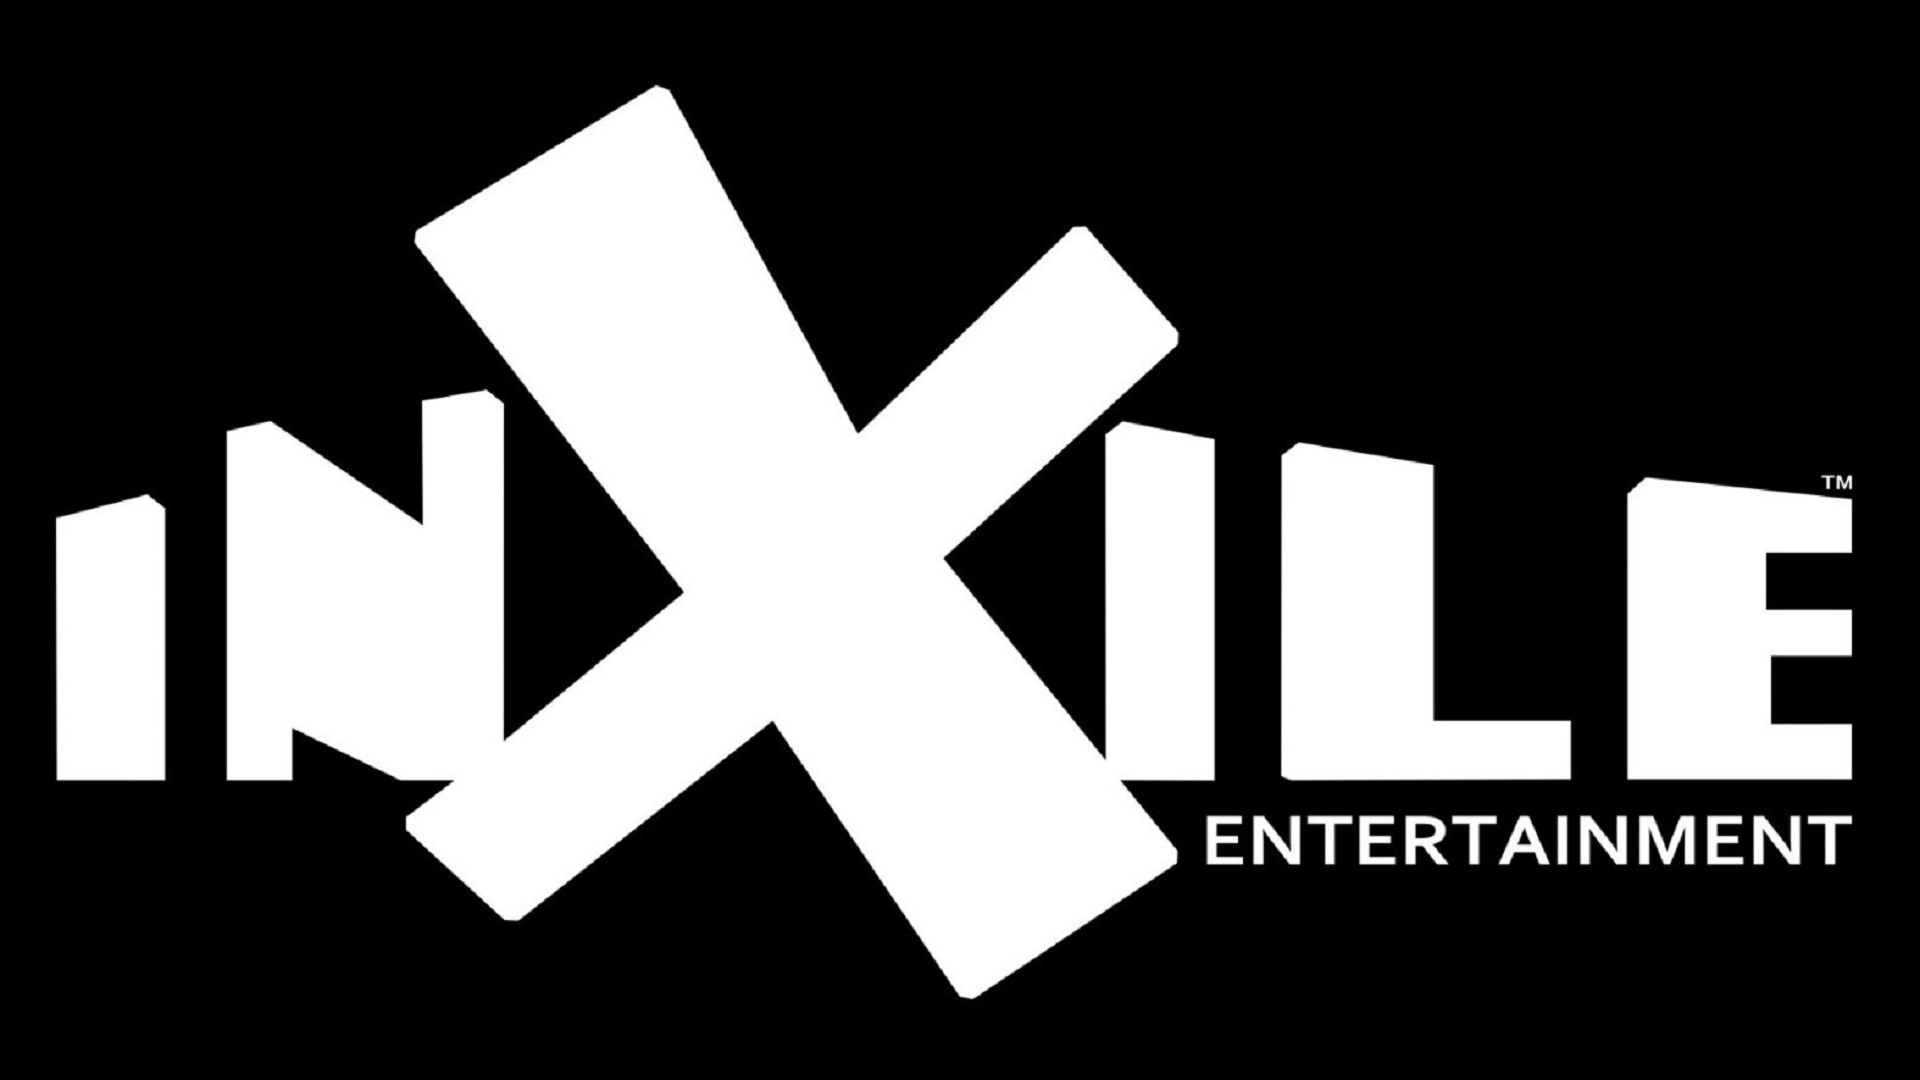 inxile entertainment logo